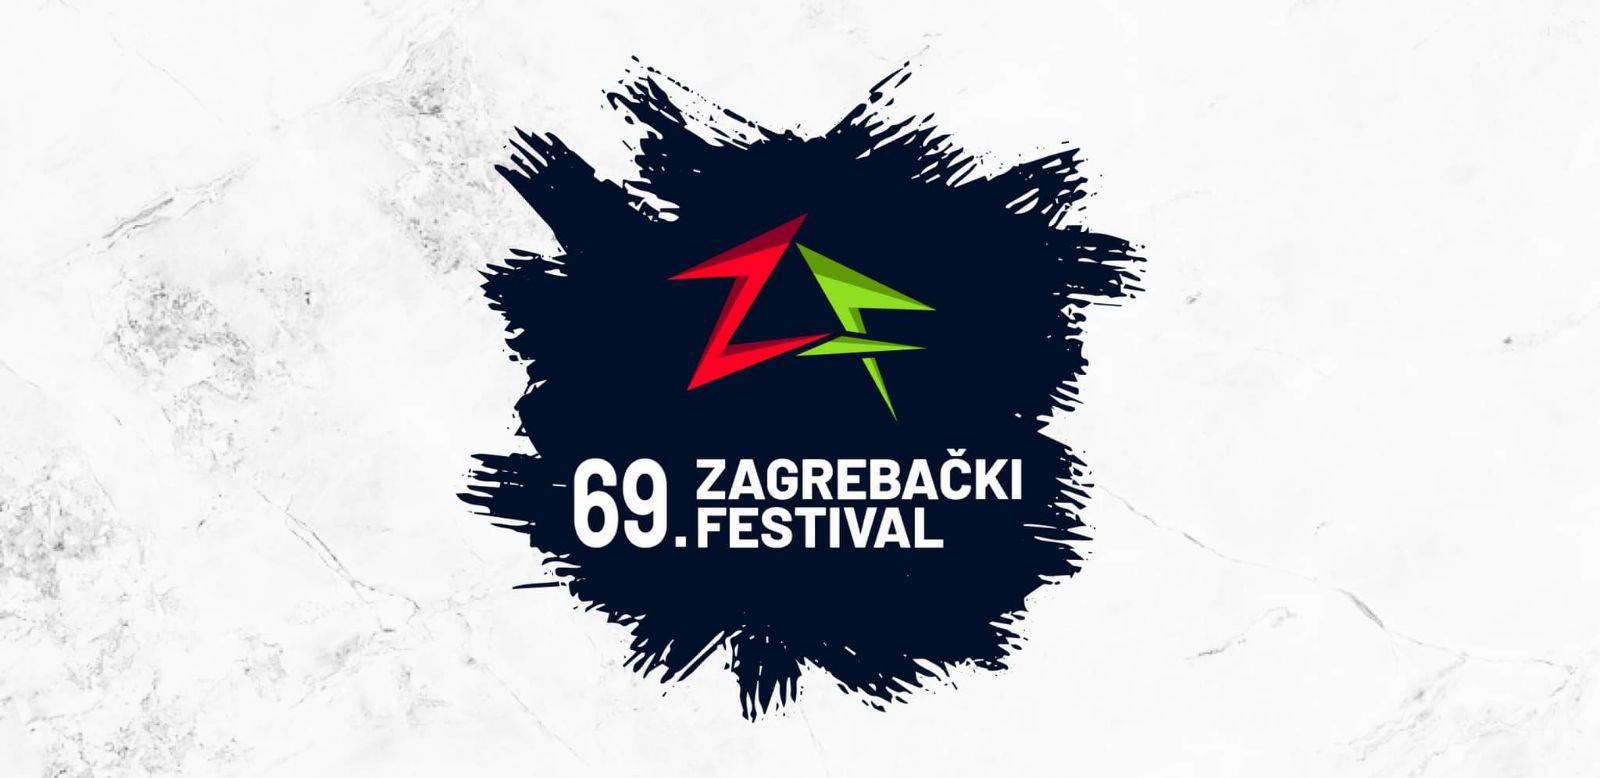 Ovih 20 pjesama natjecat će se na 69. Zagrebačkom festivalu